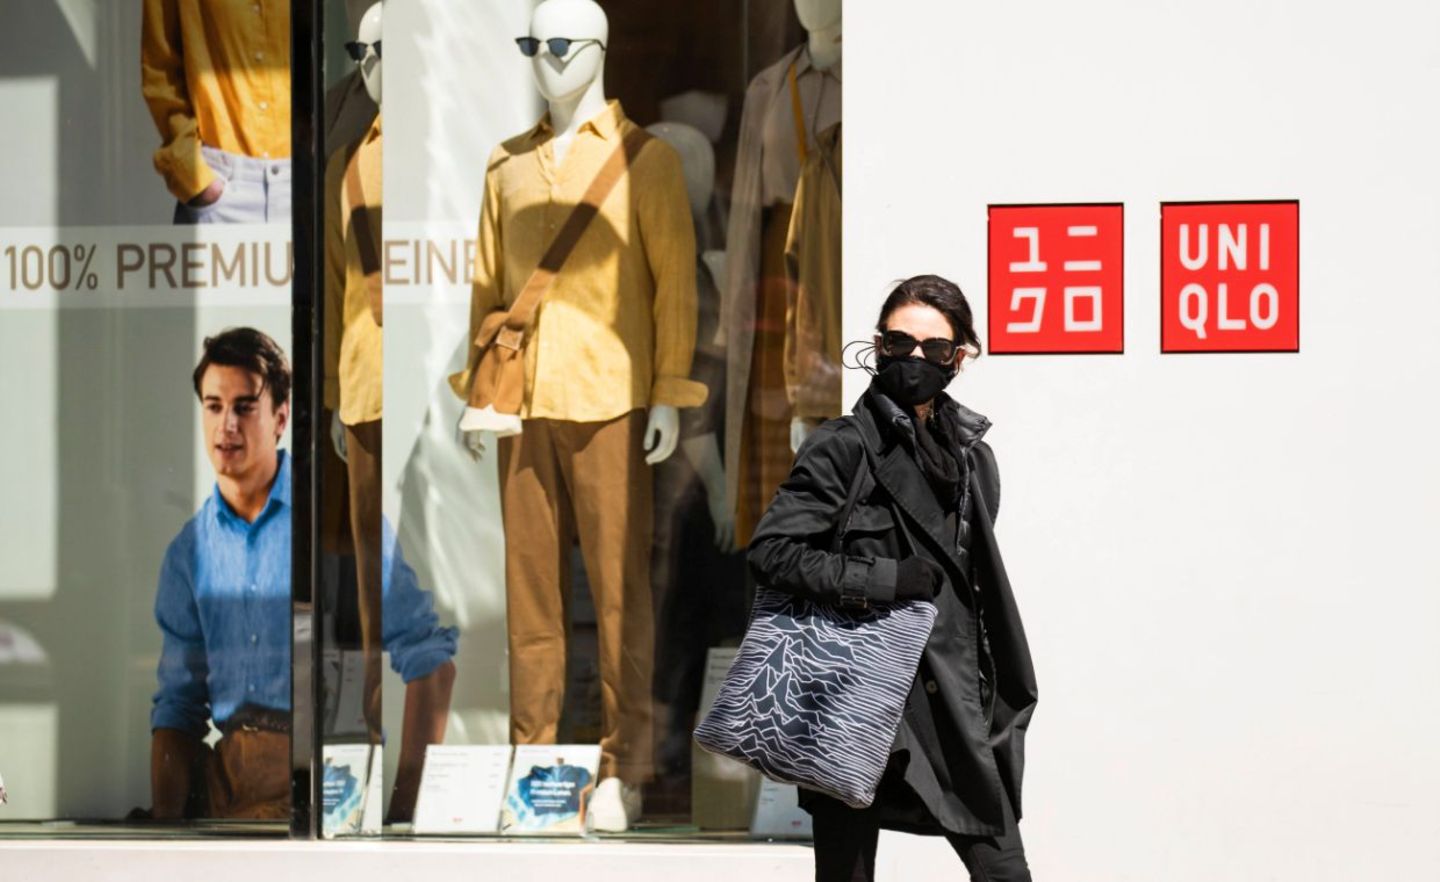 Eine Frau mit Mundschutz geht an einem Uniqlo-Geschäft vorbei